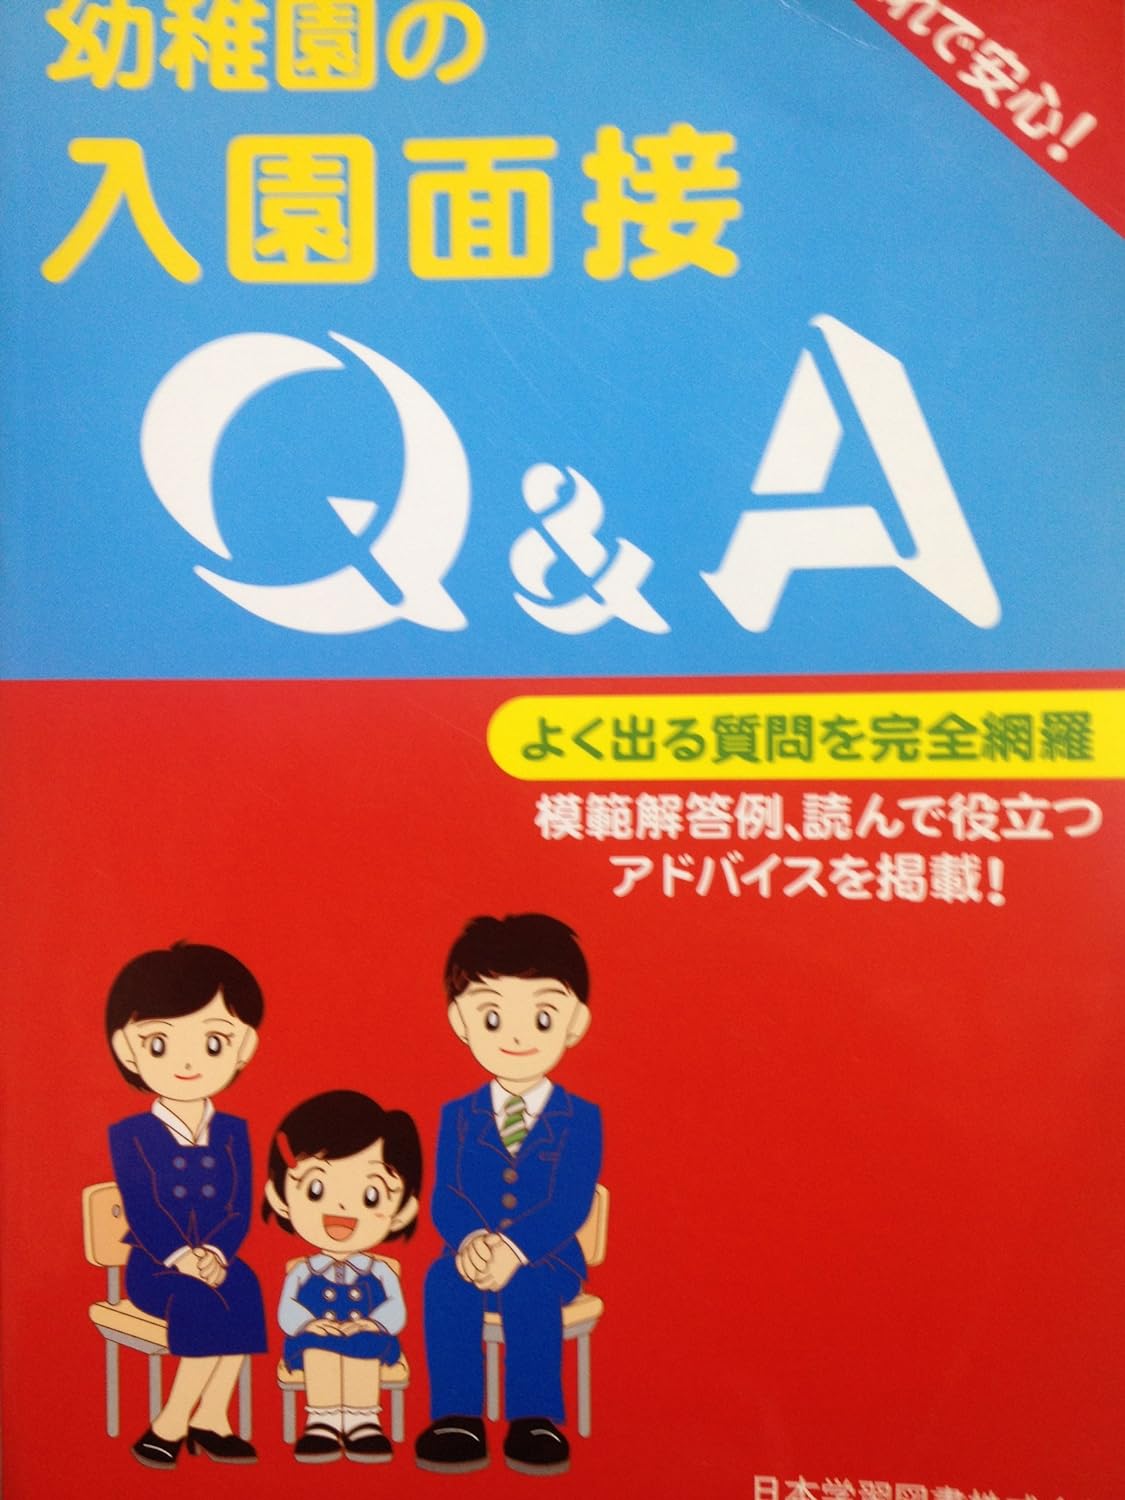 幼稚園の入園面接 Q&A 